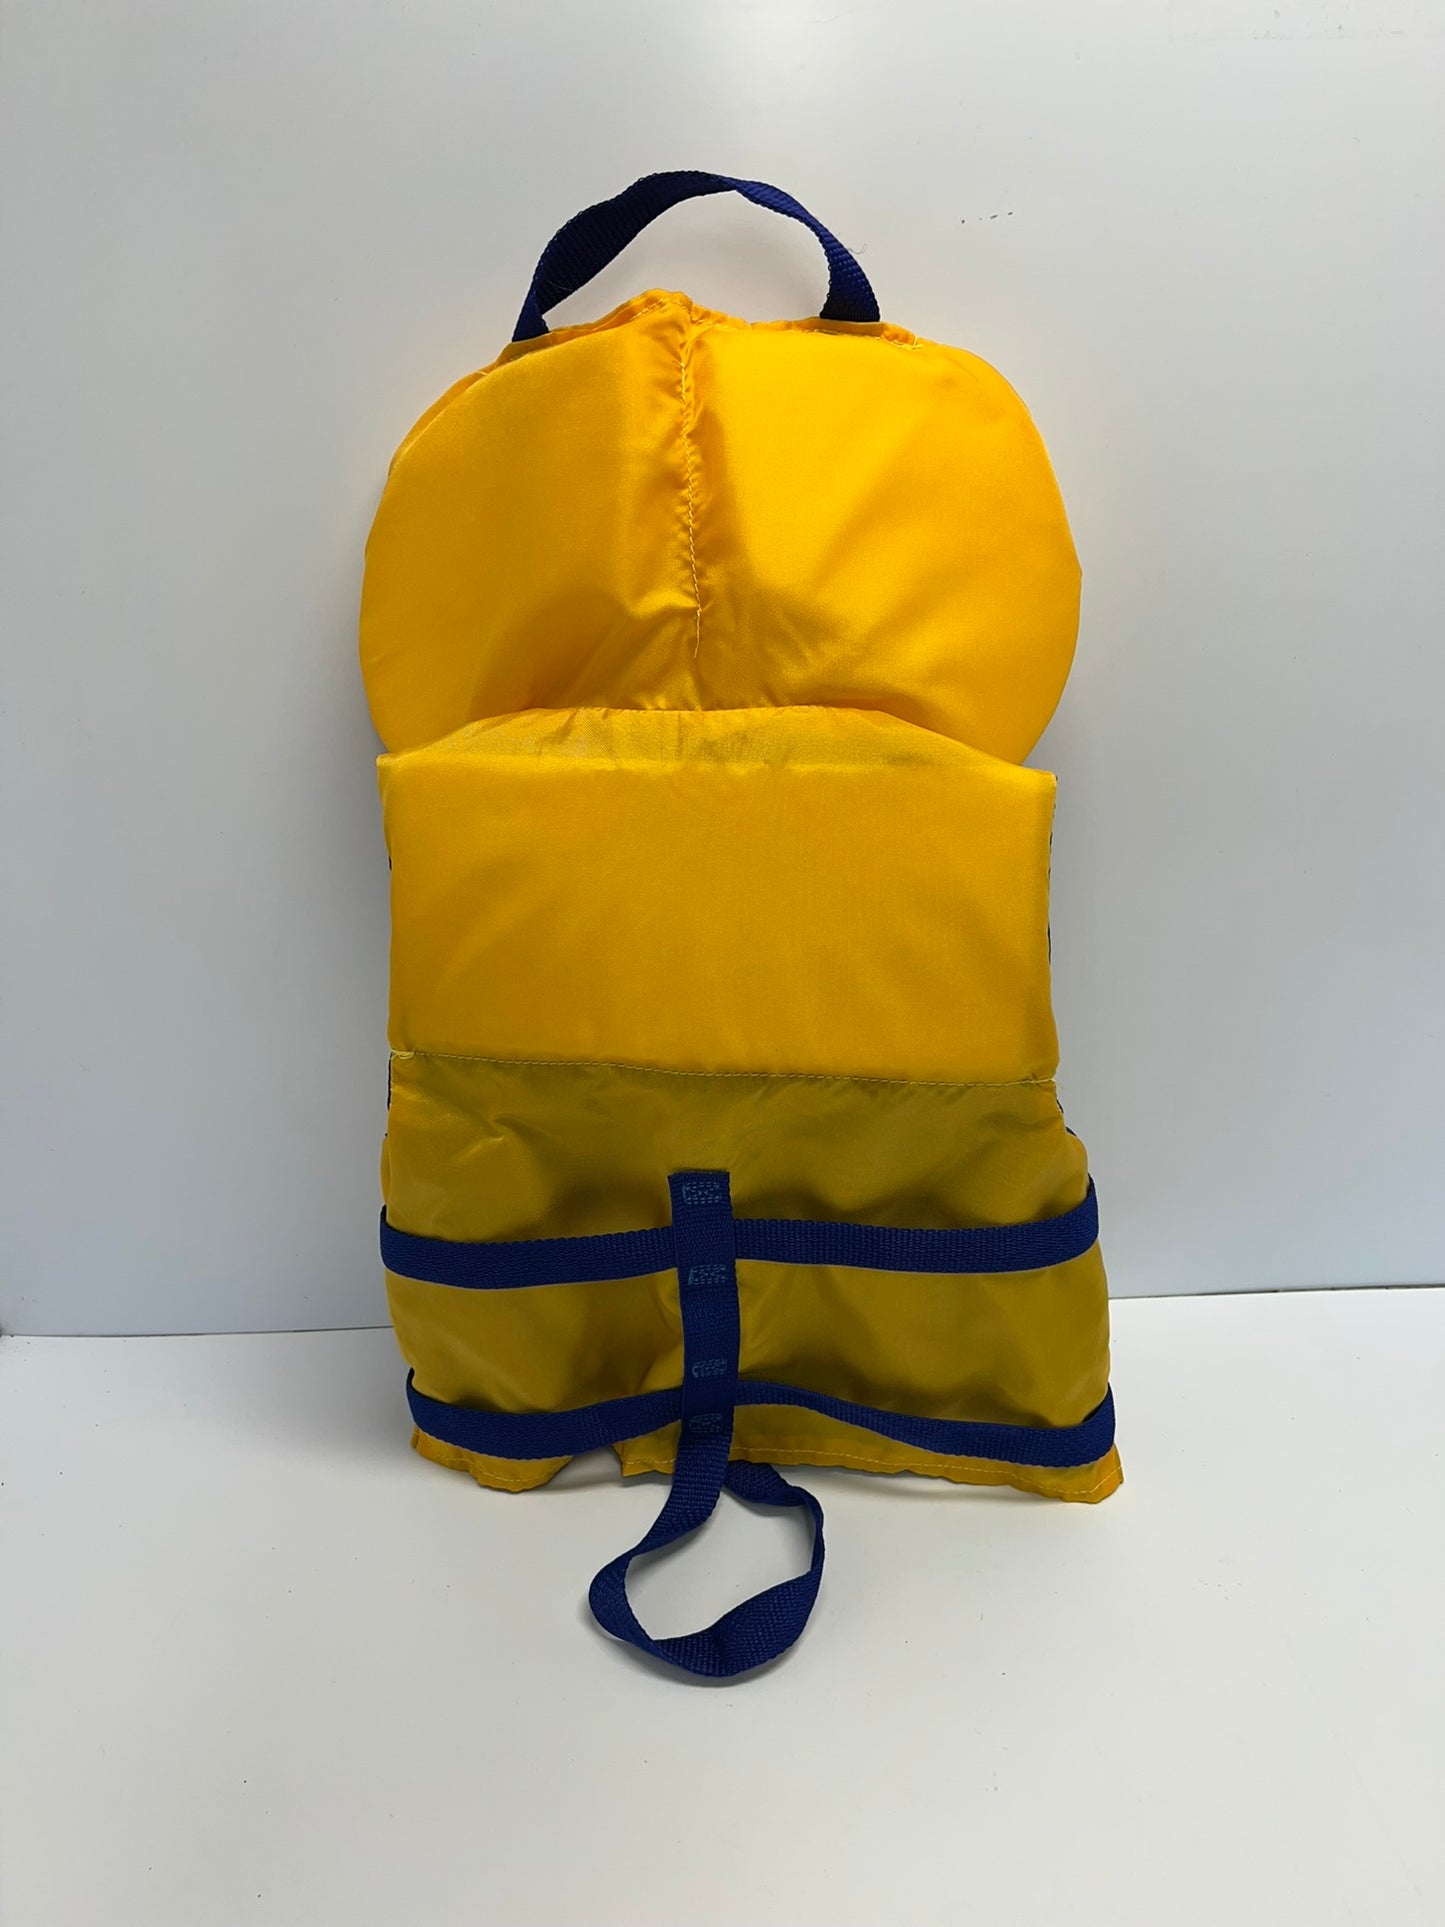 Life Jacket Child Size 30-60 lb Buoy o Boy Yellow Blue Like New